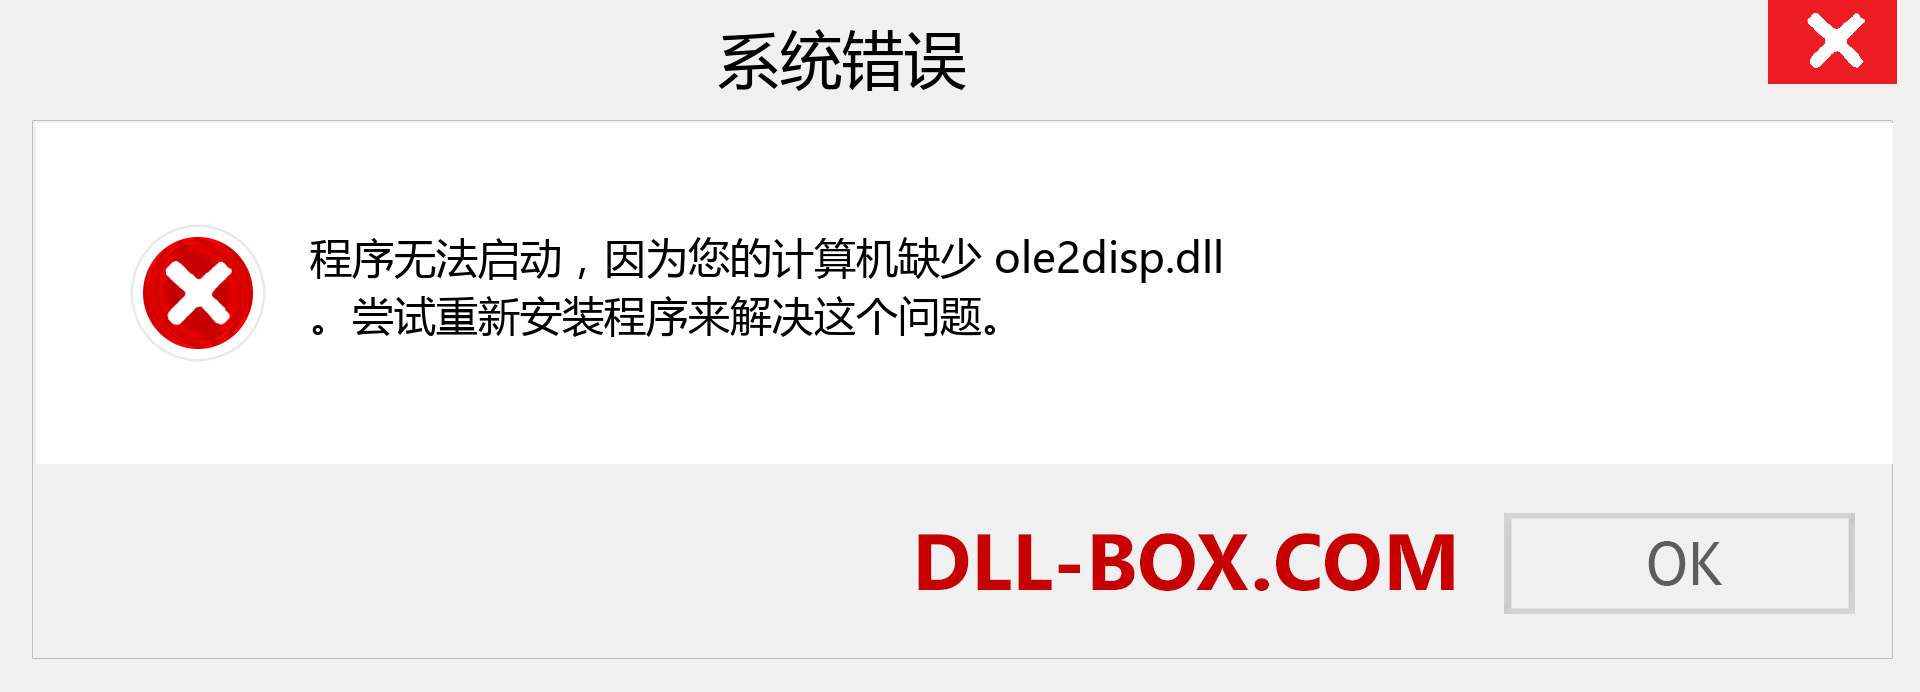 ole2disp.dll 文件丢失？。 适用于 Windows 7、8、10 的下载 - 修复 Windows、照片、图像上的 ole2disp dll 丢失错误